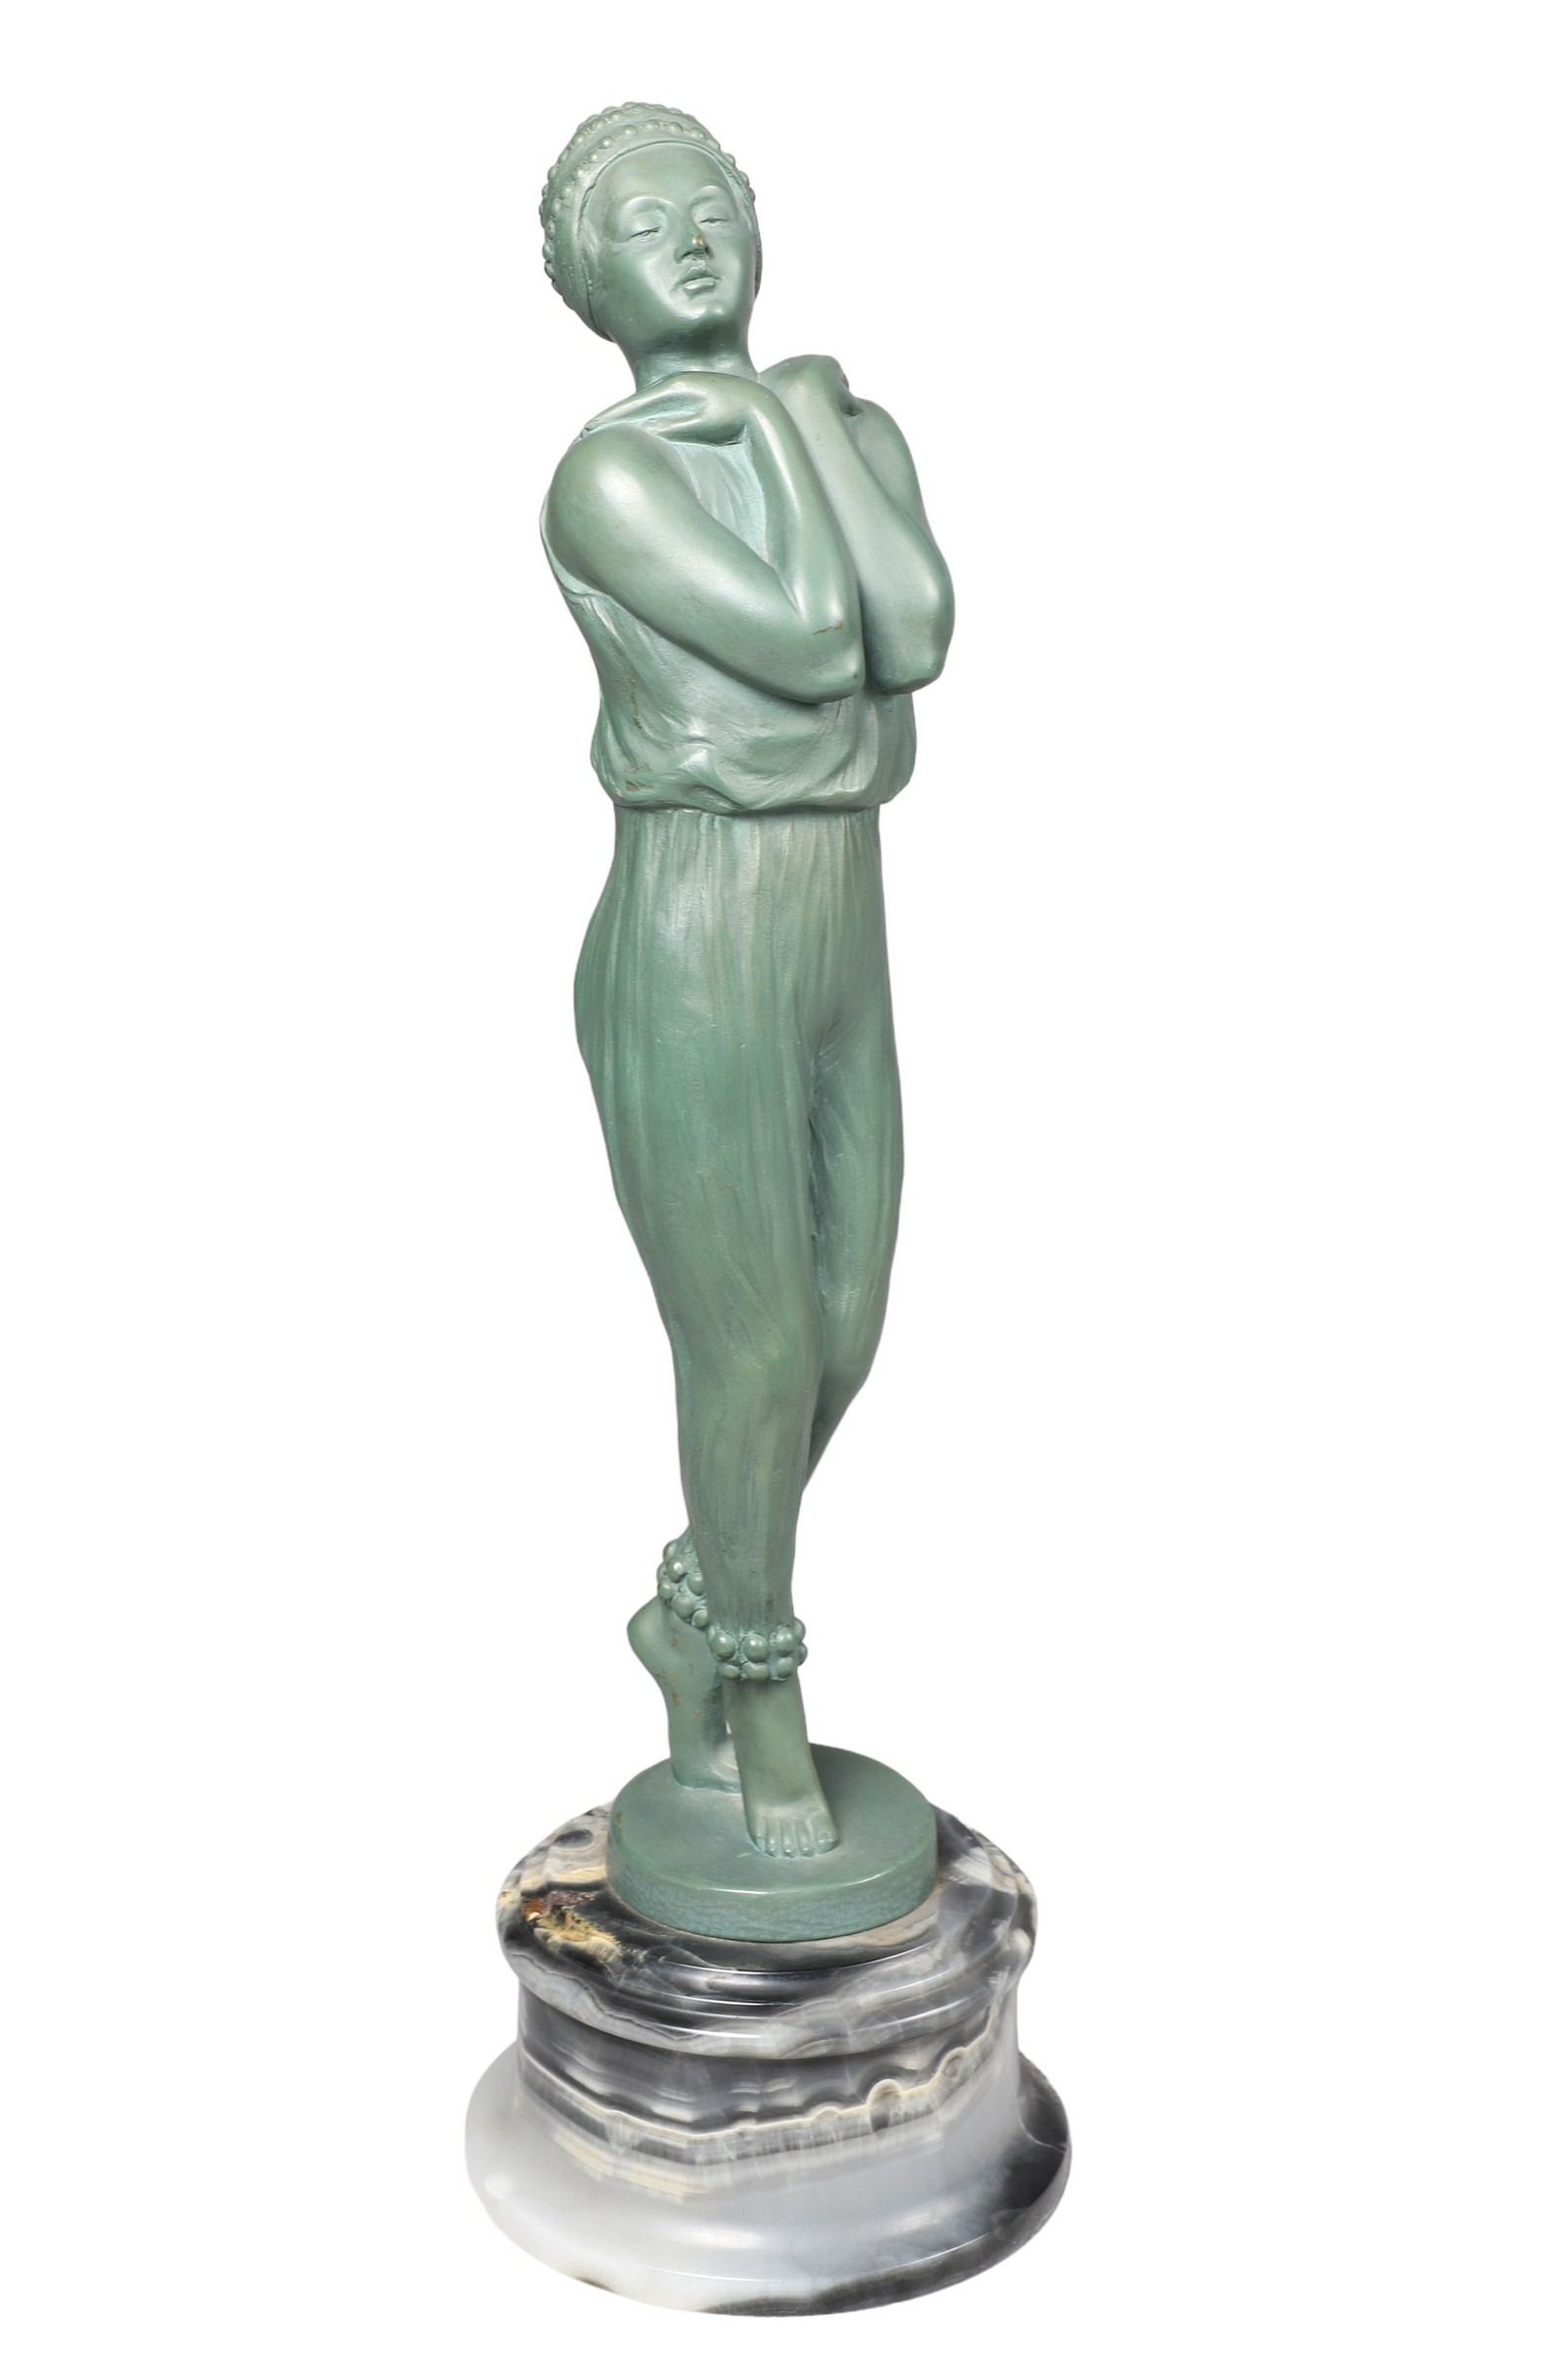 Art Deco bronze of a dancer patinated 2e0e98